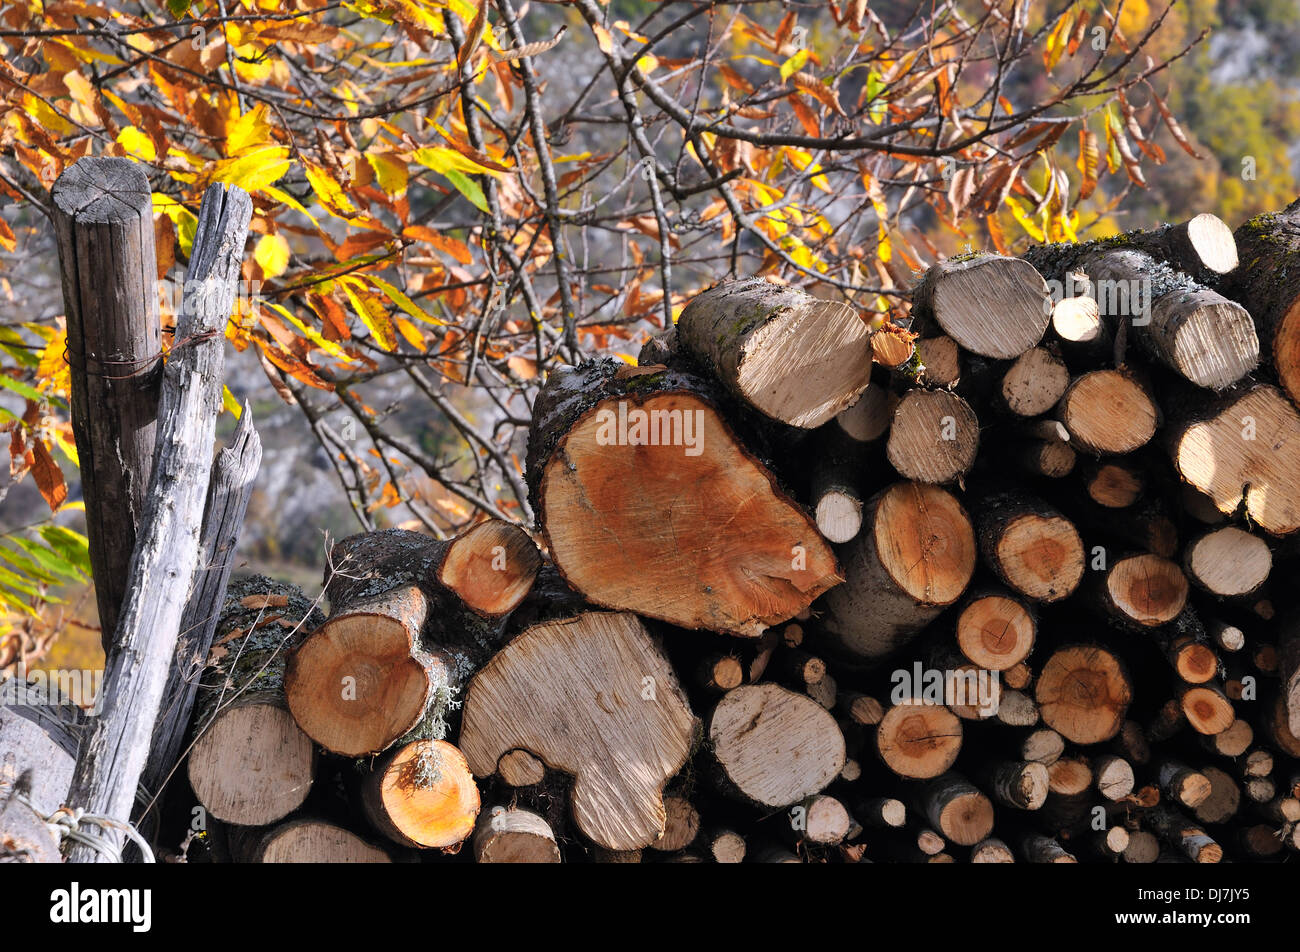 Wood in autumn Pescorocchiano (Rieti) by andrea quercioli Stock Photo